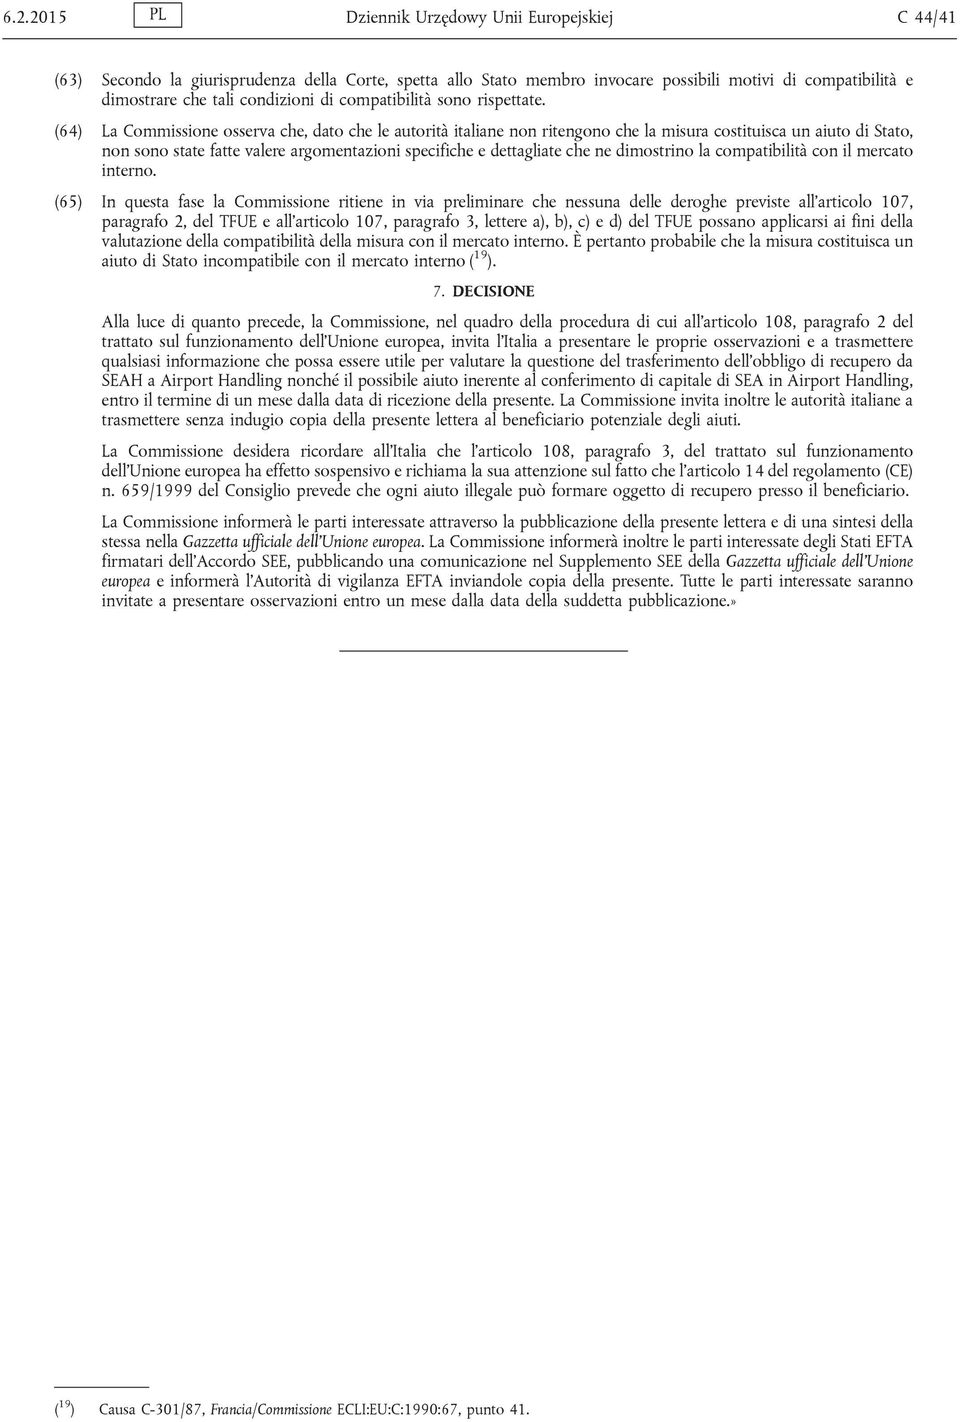 (64) La Commissione osserva che, dato che le autorità italiane non ritengono che la misura costituisca un aiuto di Stato, non sono state fatte valere argomentazioni specifiche e dettagliate che ne